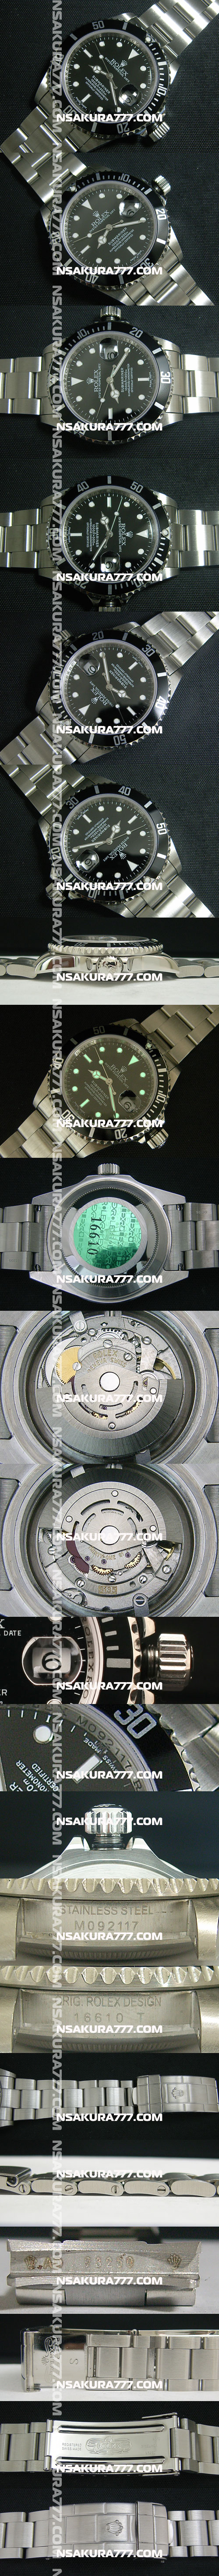 レプリカ時計ロレックス サブマリーナ Rolex 3135 28800振動 - ウインドウを閉じる